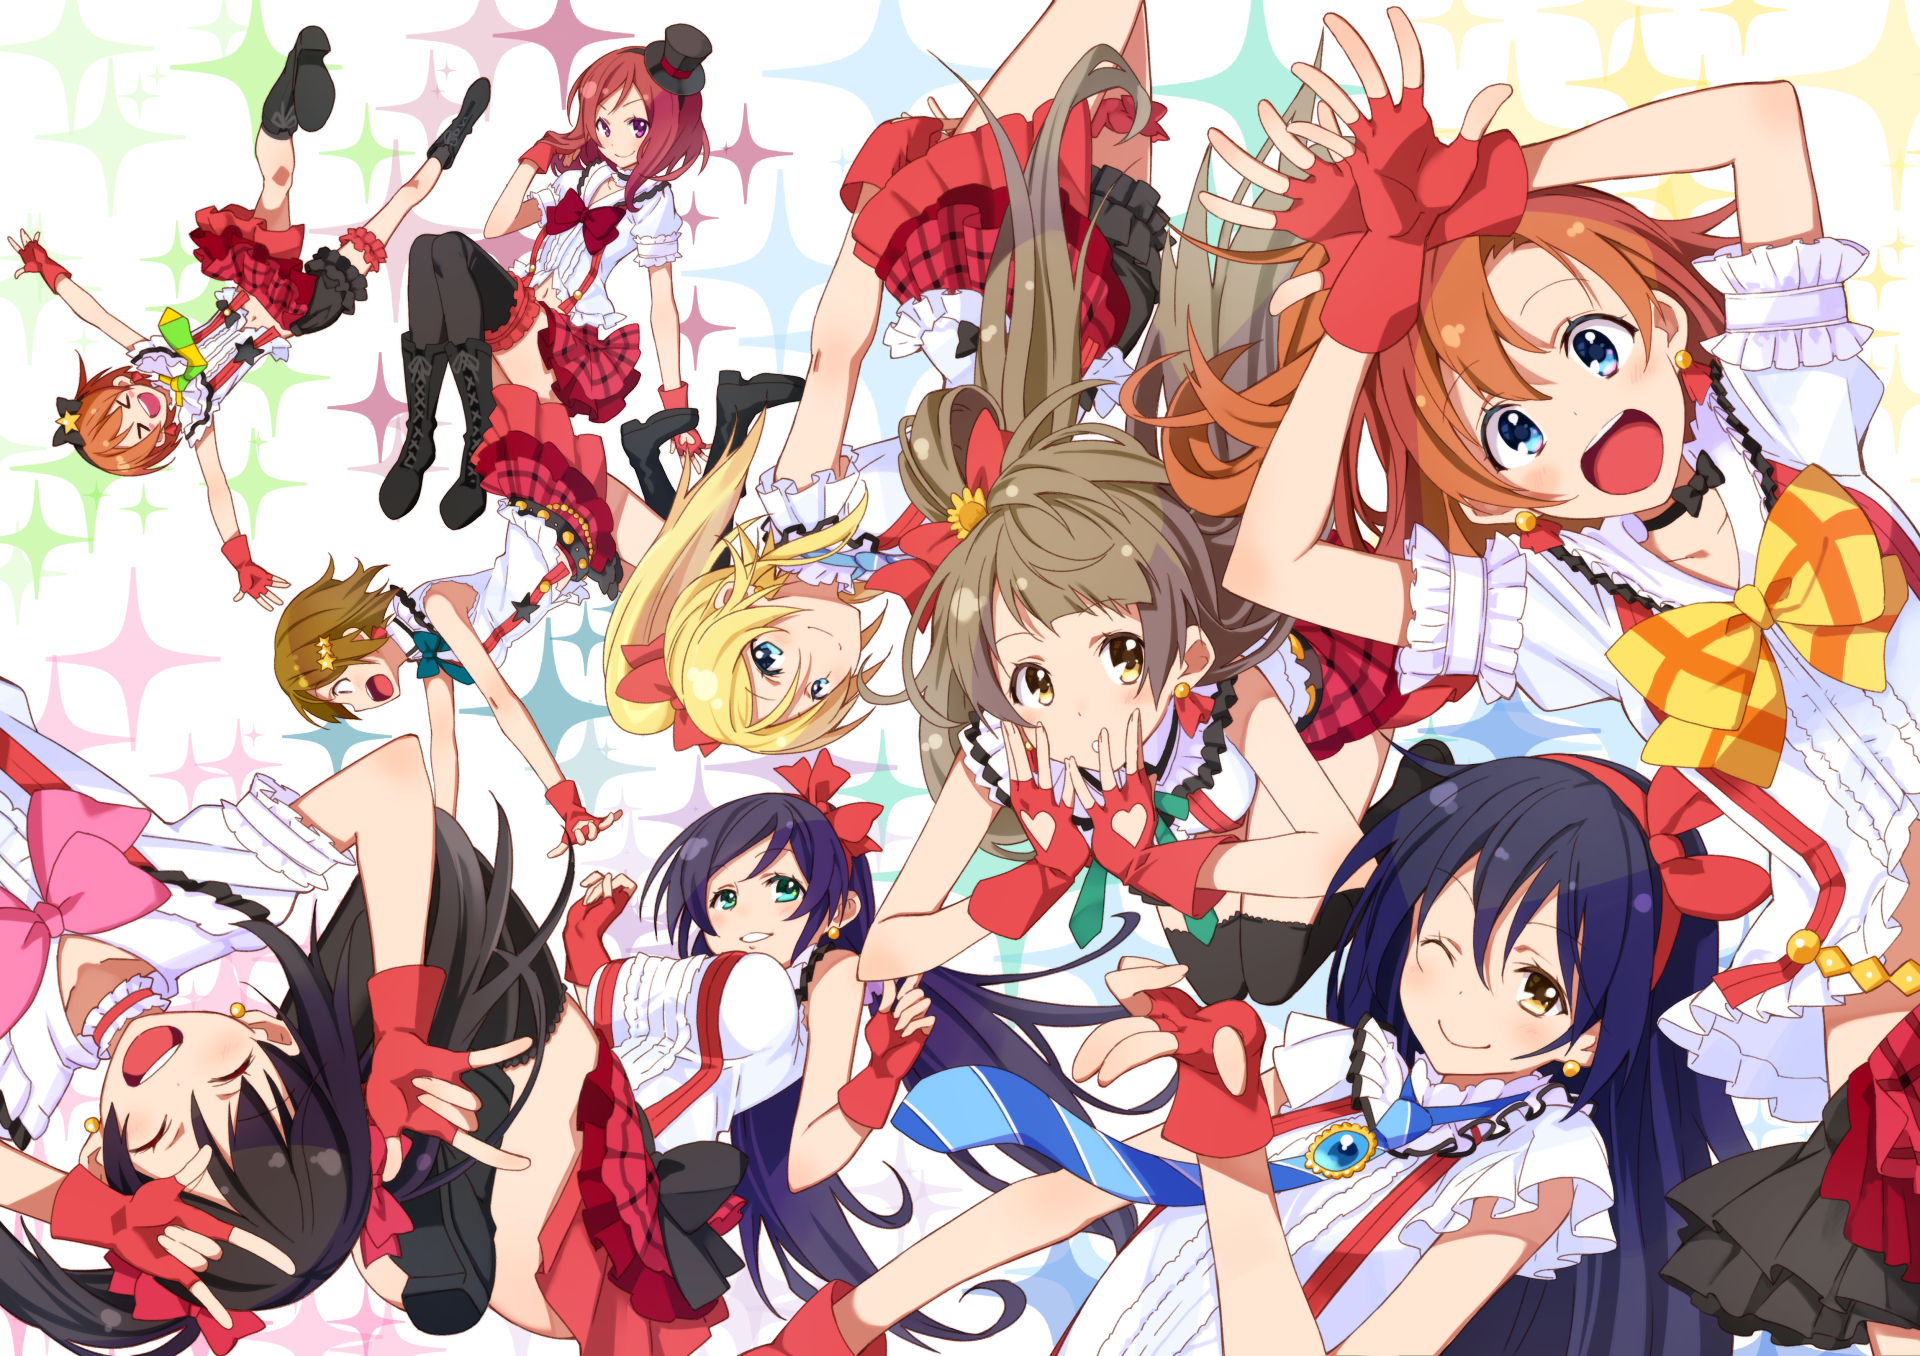 Free download wallpaper Anime, Maki Nishikino, Eri Ayase, Hanayo Koizumi, Honoka Kousaka, Kotori Minami, Nico Yazawa, Nozomi Tojo, Rin Hoshizora, Umi Sonoda, Love Live! on your PC desktop